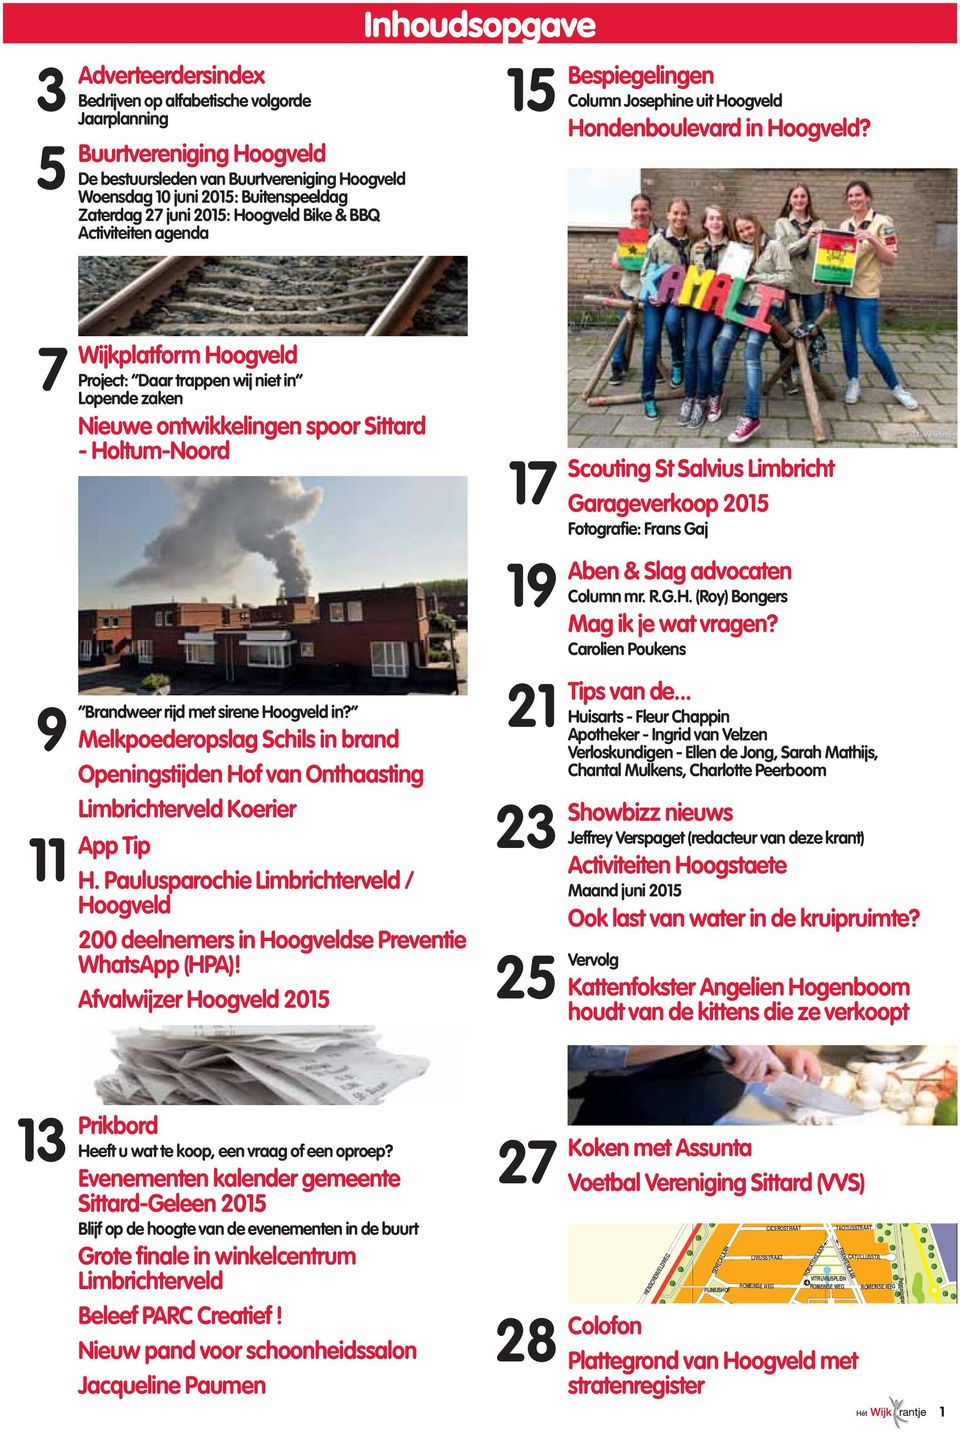 7 9 Brandweer 11 Wijkplatform Hoogveld Project: Daar trappen wij niet in Lopende zaken Nieuwe ontwikkelingen spoor Sittard - Holtum-Noord rijd met sirene Hoogveld in?